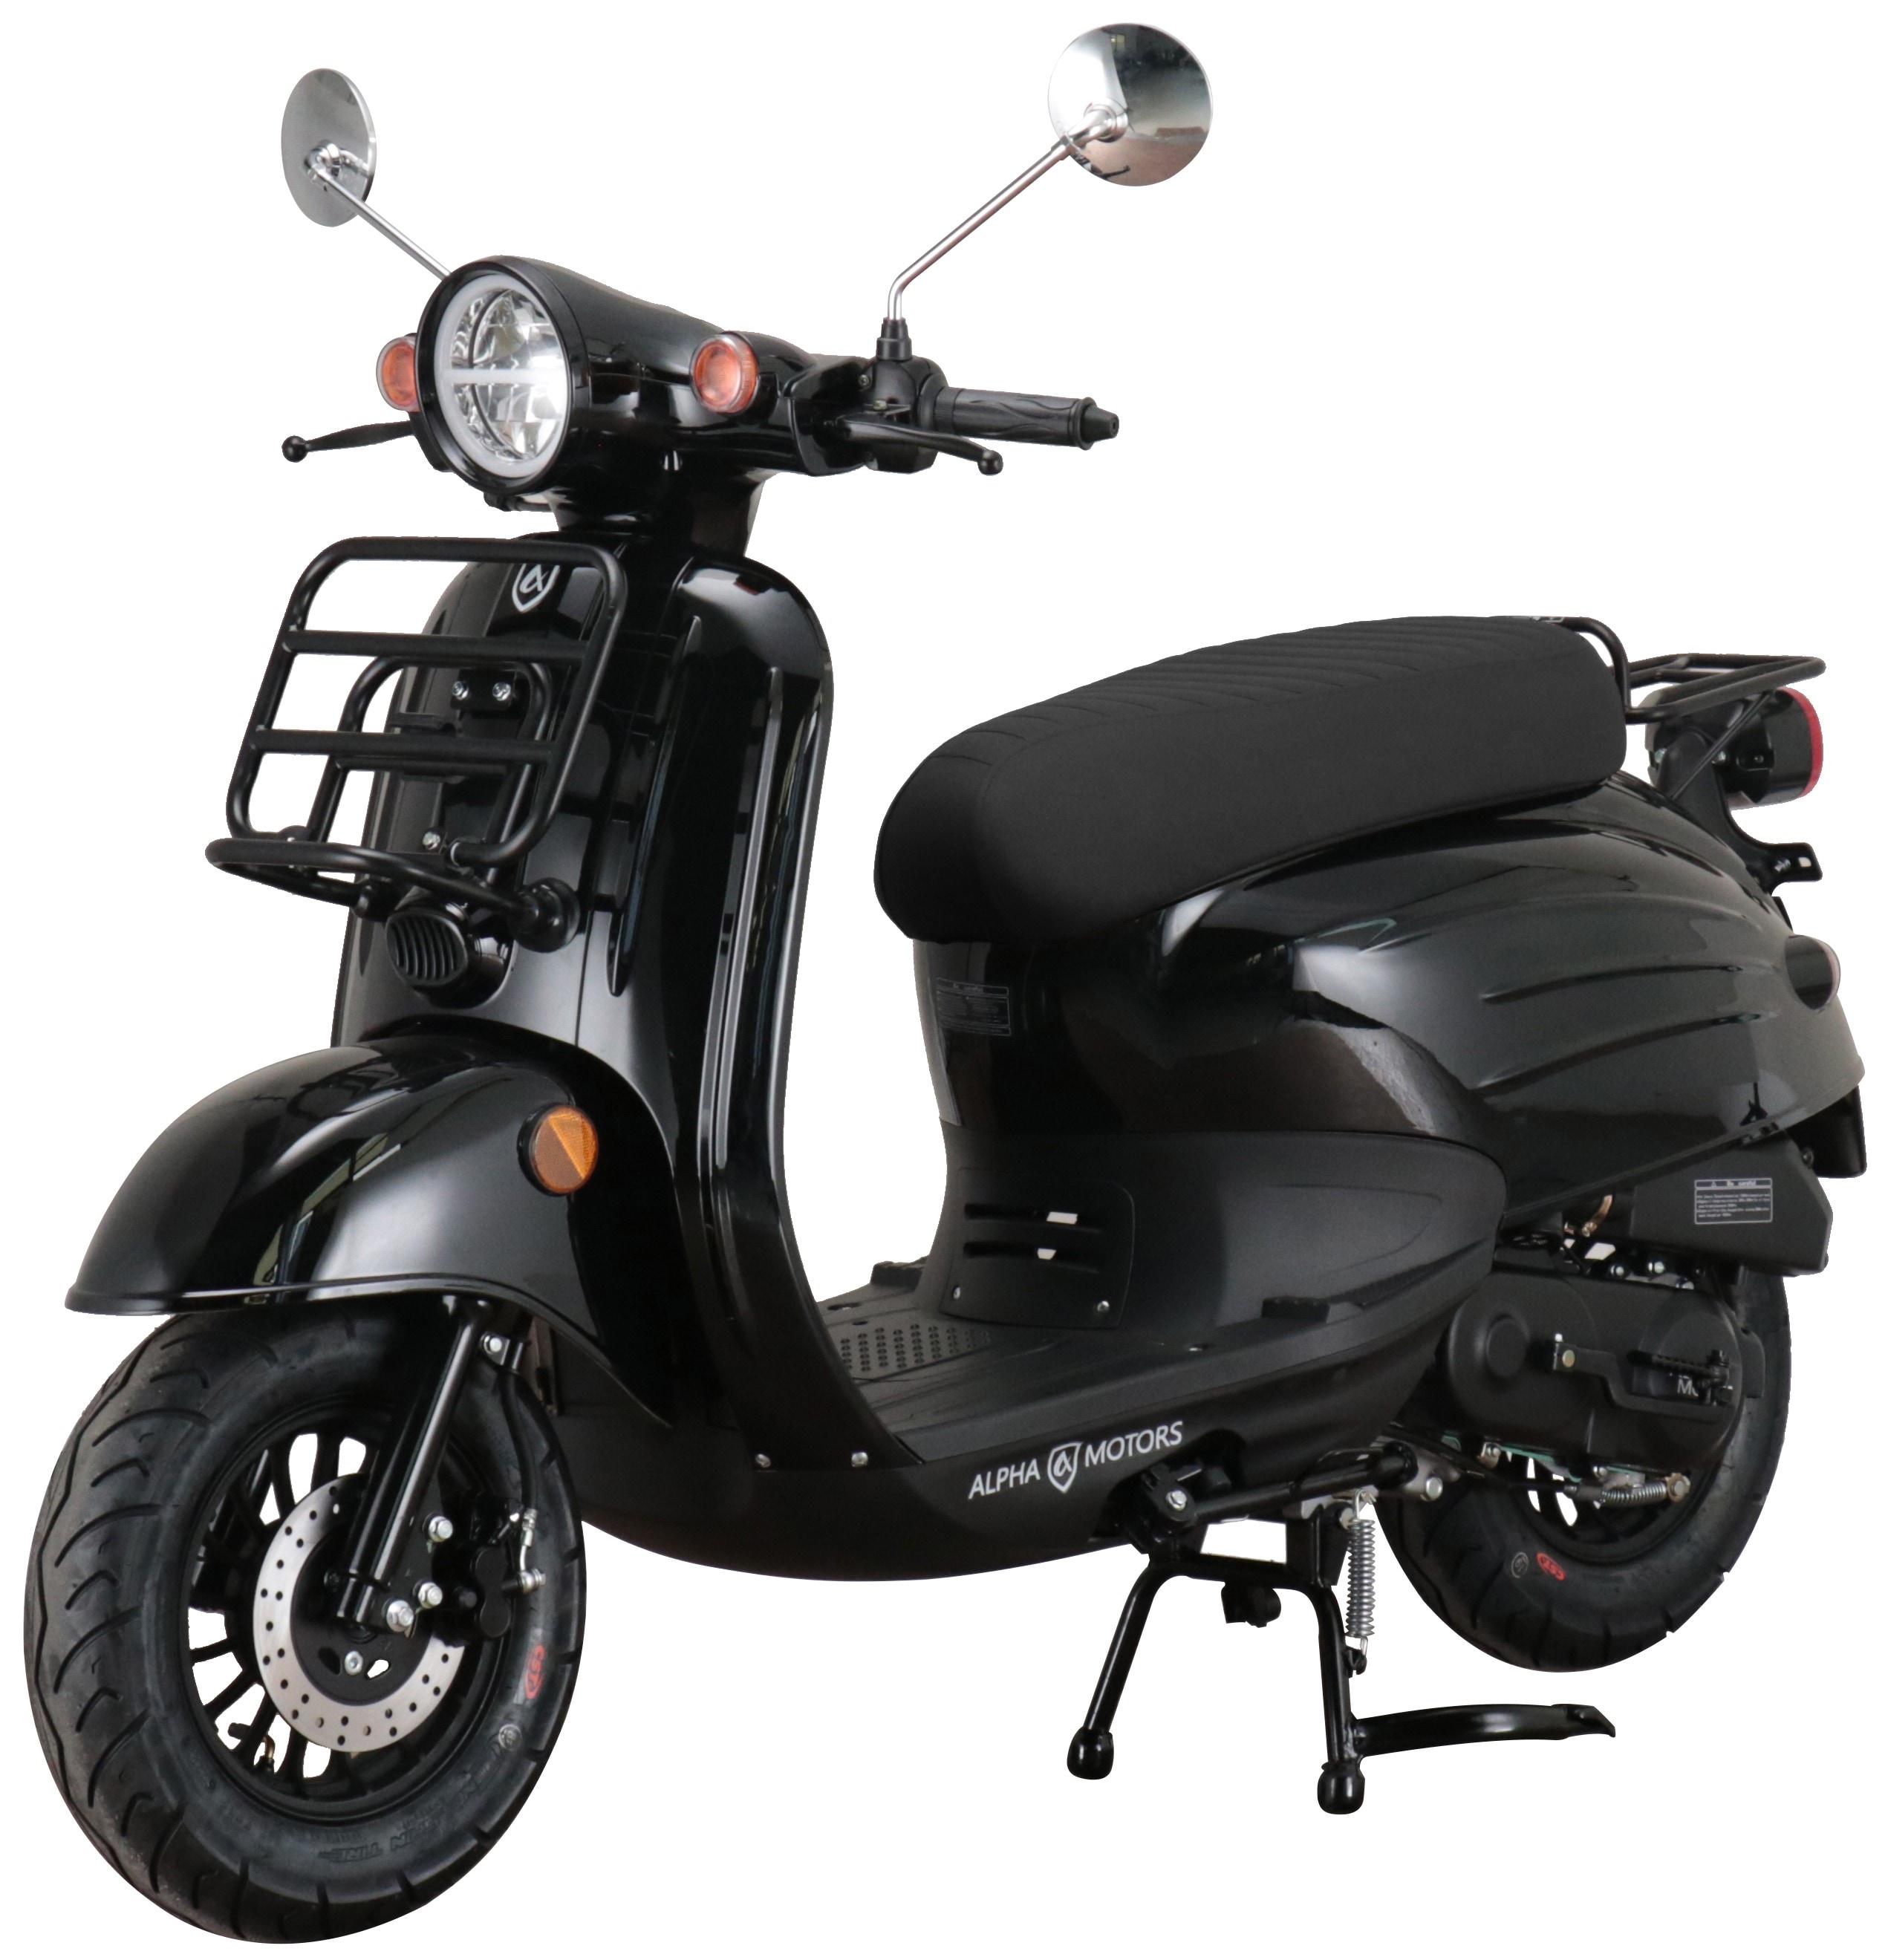 Alpha Motors Motorroller Adria 50 ccm 45 km/h EURO 5 schwarz online kaufen  bei Netto